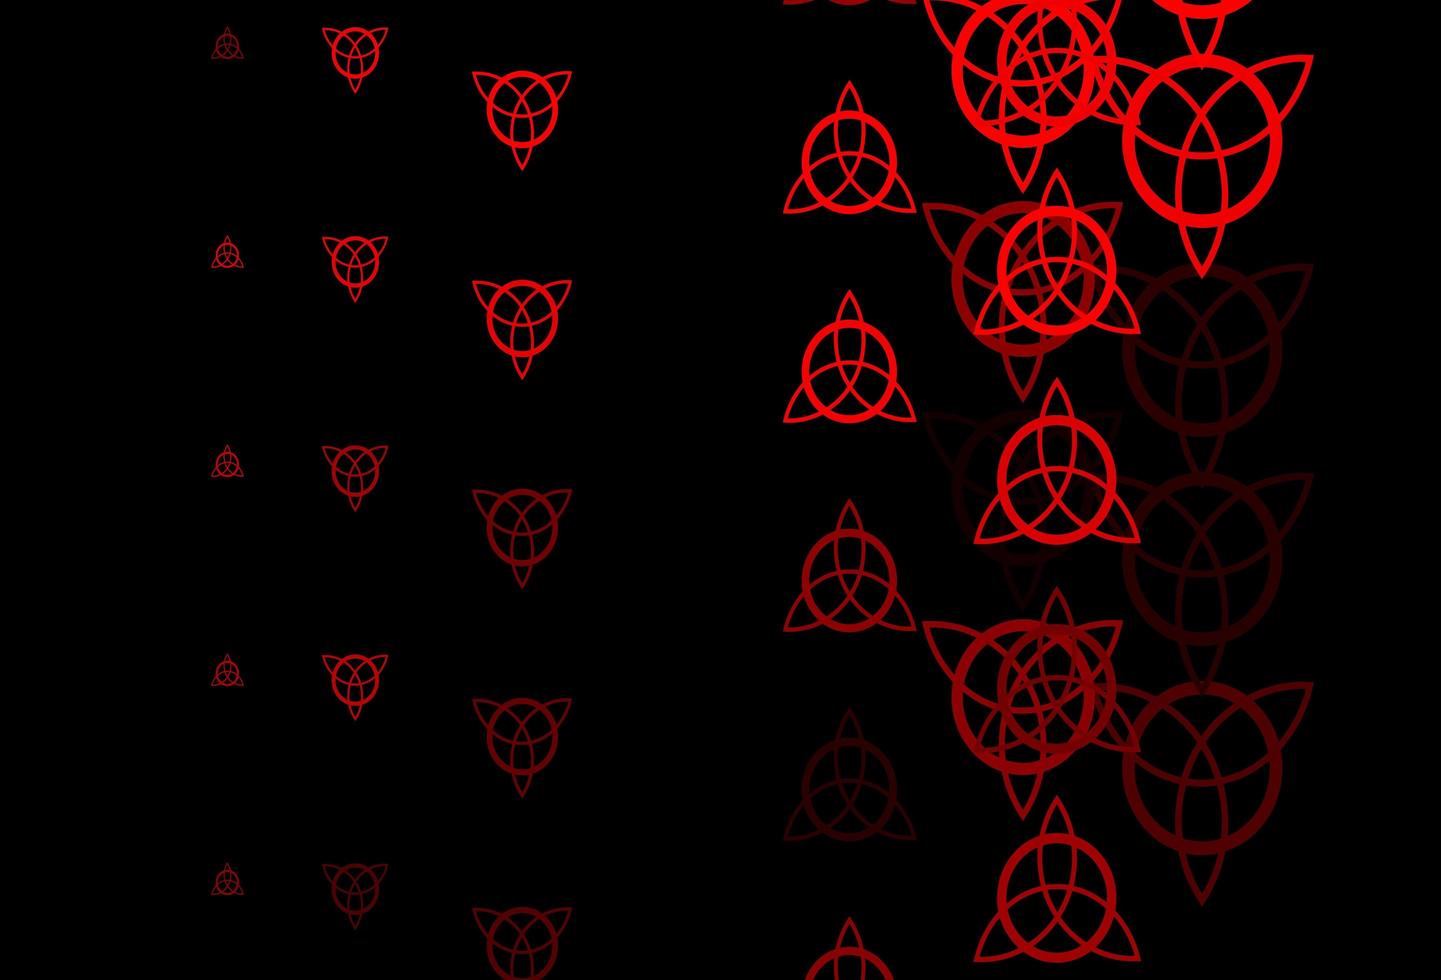 modelo de vetor vermelho escuro com sinais esotéricos.